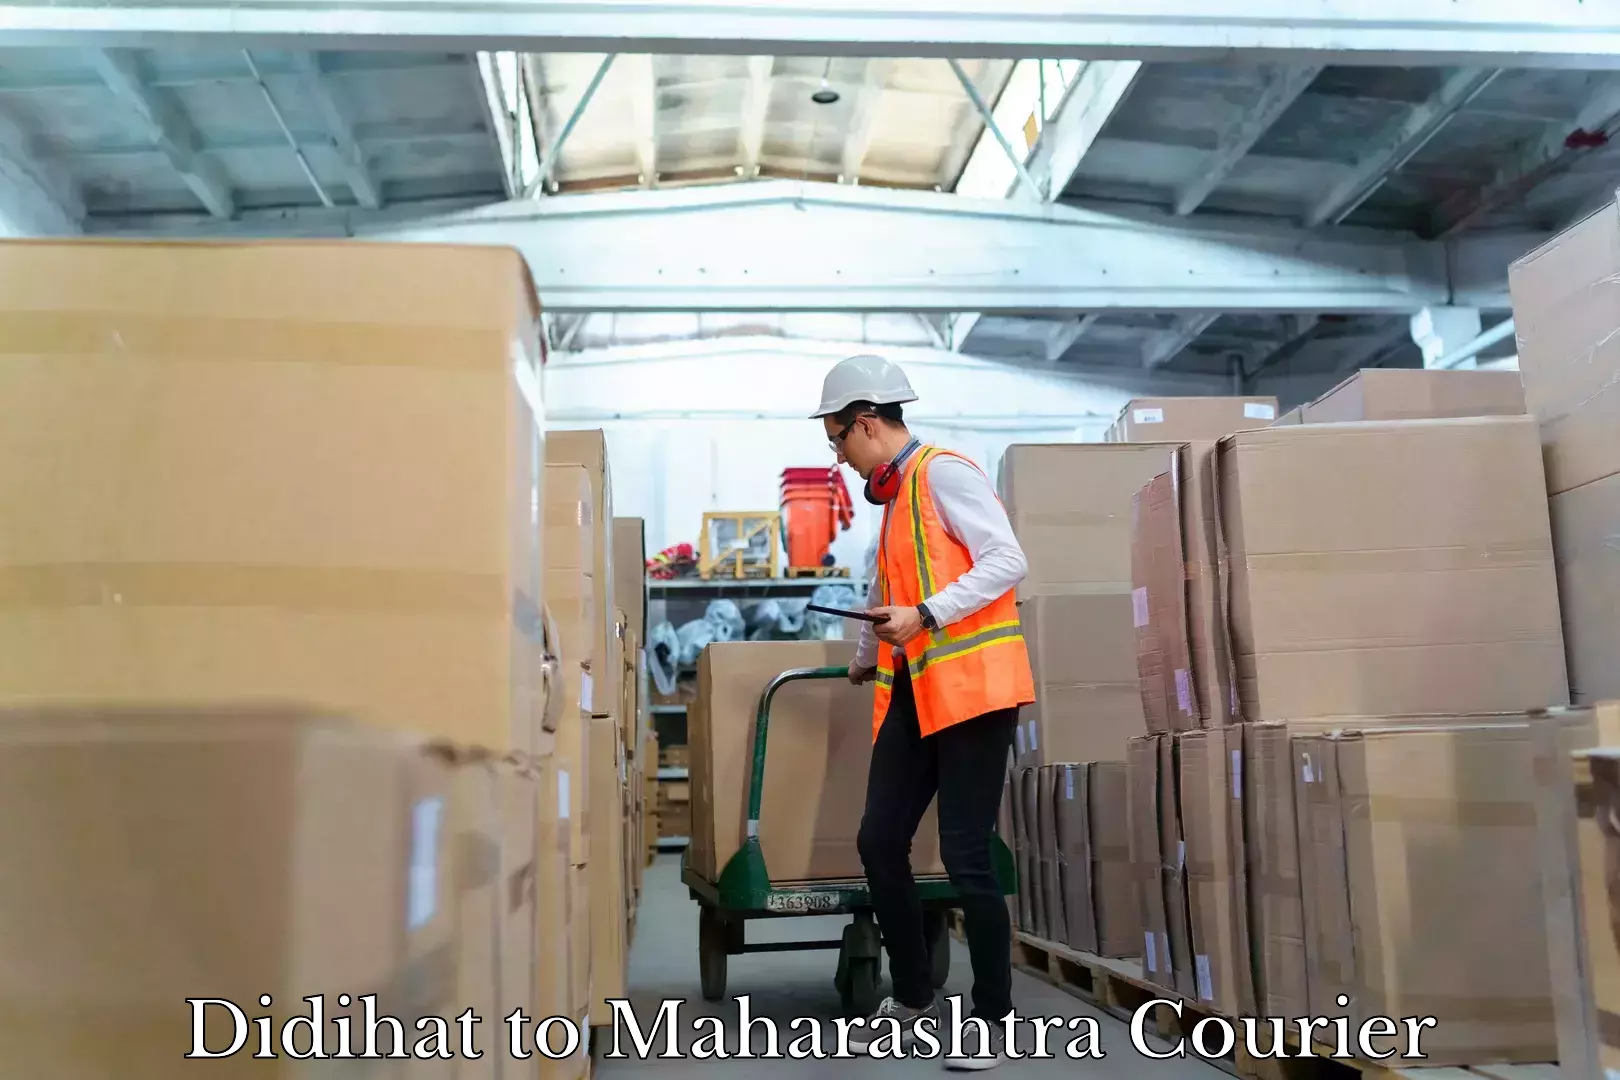 Speedy delivery service Didihat to Maharashtra